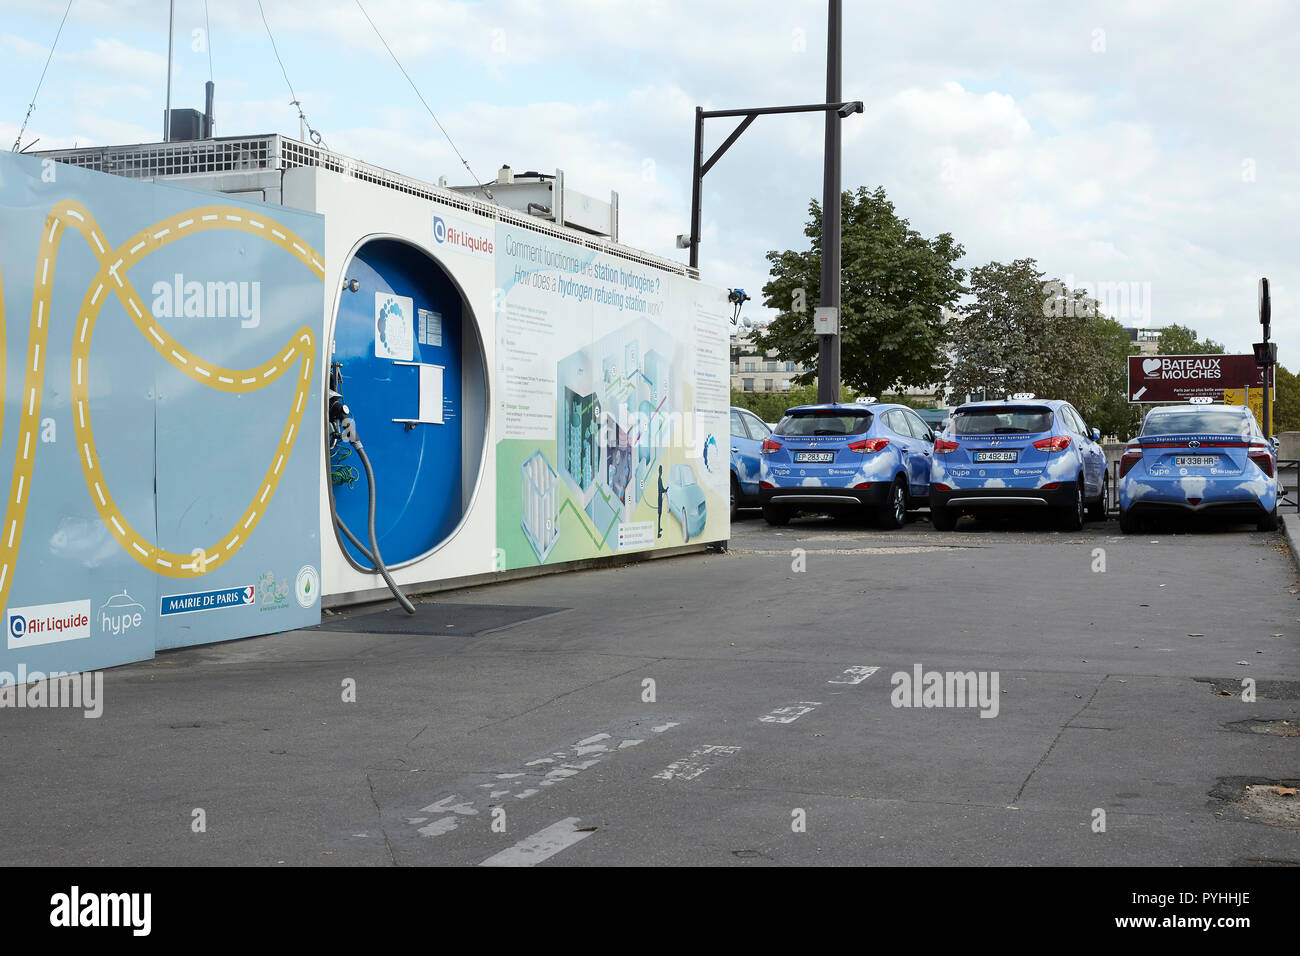 Paris, Ile-de-France, Francia - una estación de llenado de hidrógeno con taxis alimentado eléctricamente por una pila de combustible. Foto de stock